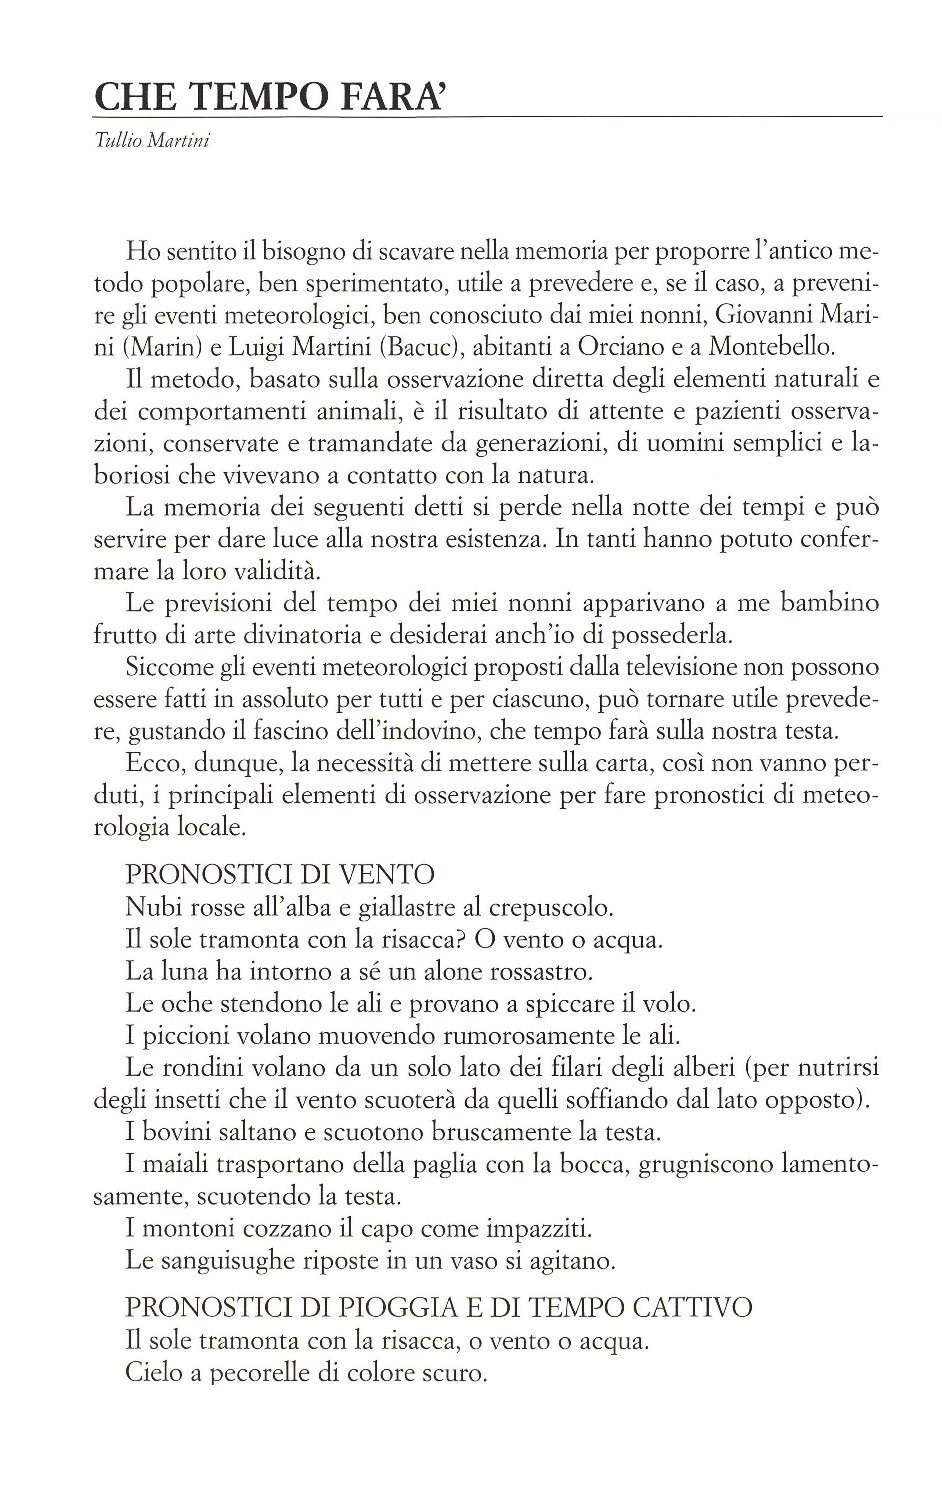 La torr i arduna tutti 2006 p.019